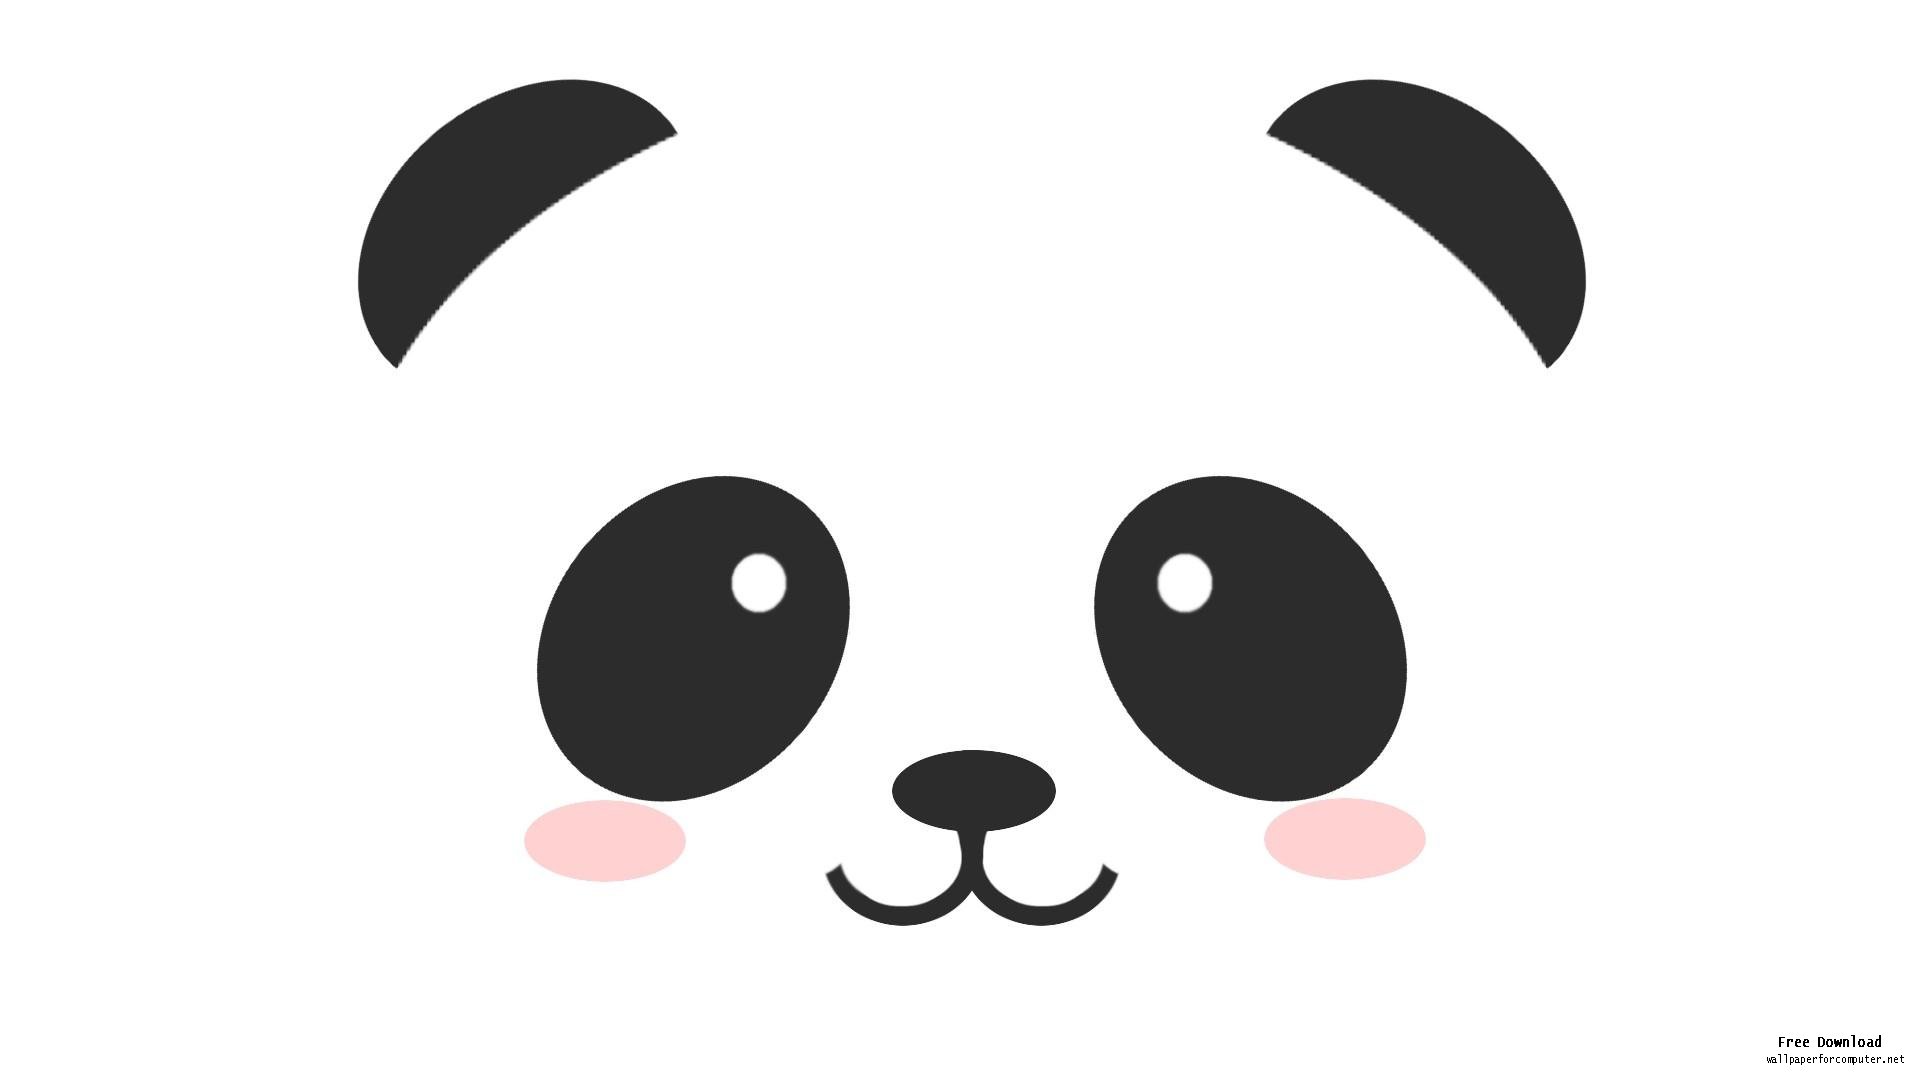 Cute cartoon panda cute cartoon panda bears clip art cartoon image ...